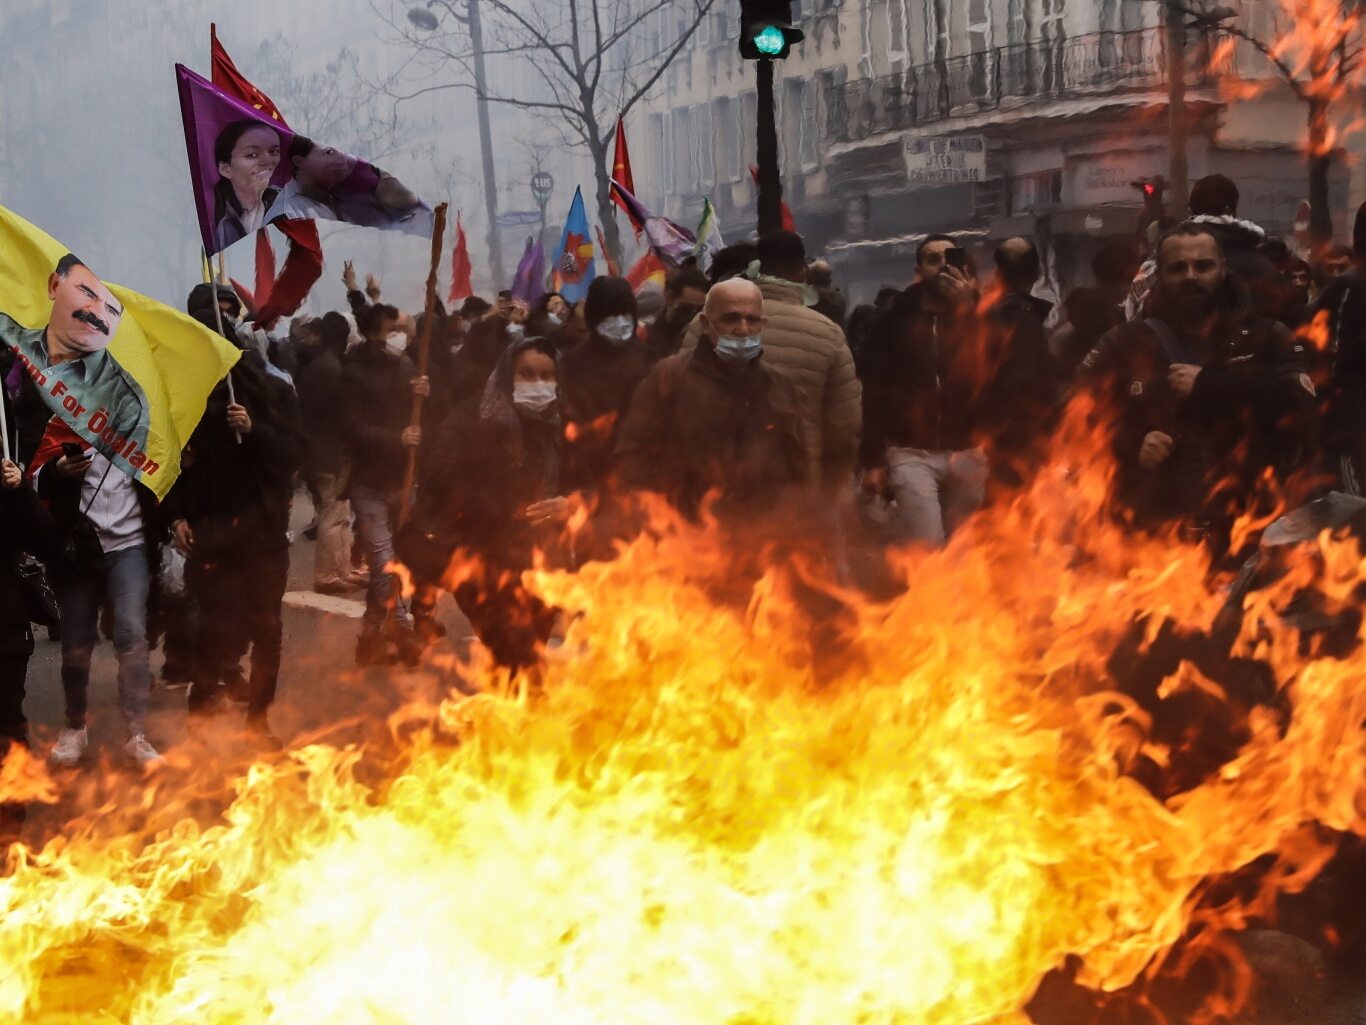 Les émeutes parisiennes se poursuivent.  Des barricades brûlent dans les rues – Wprost